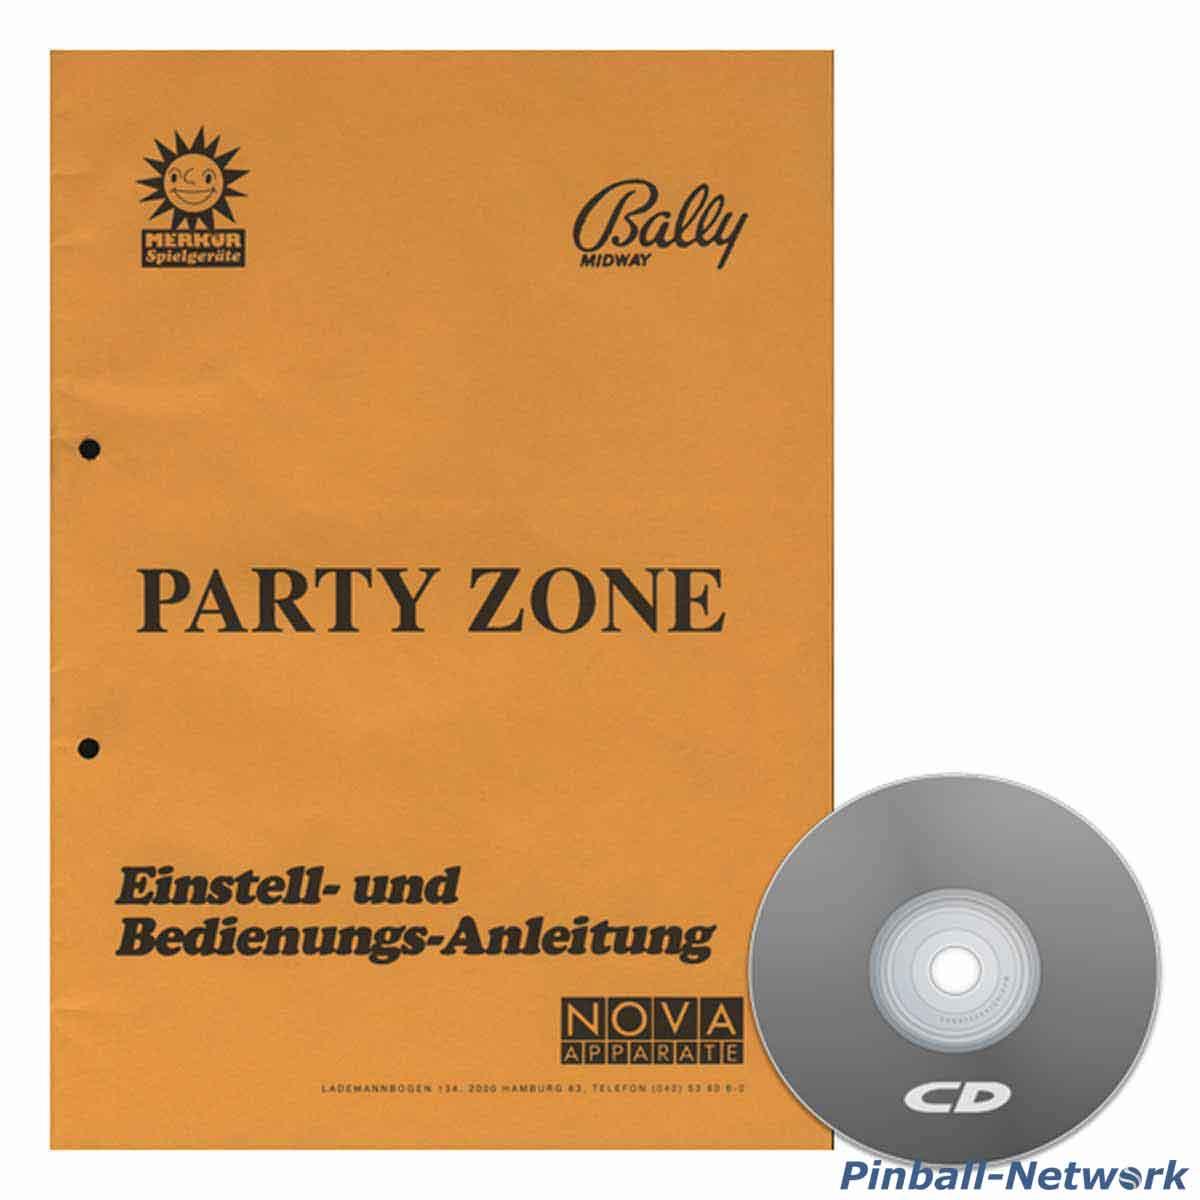 polet specificere Interconnect The Party Zone Einstell- und Bedienungs-Anleitung - www.flipperteile.de